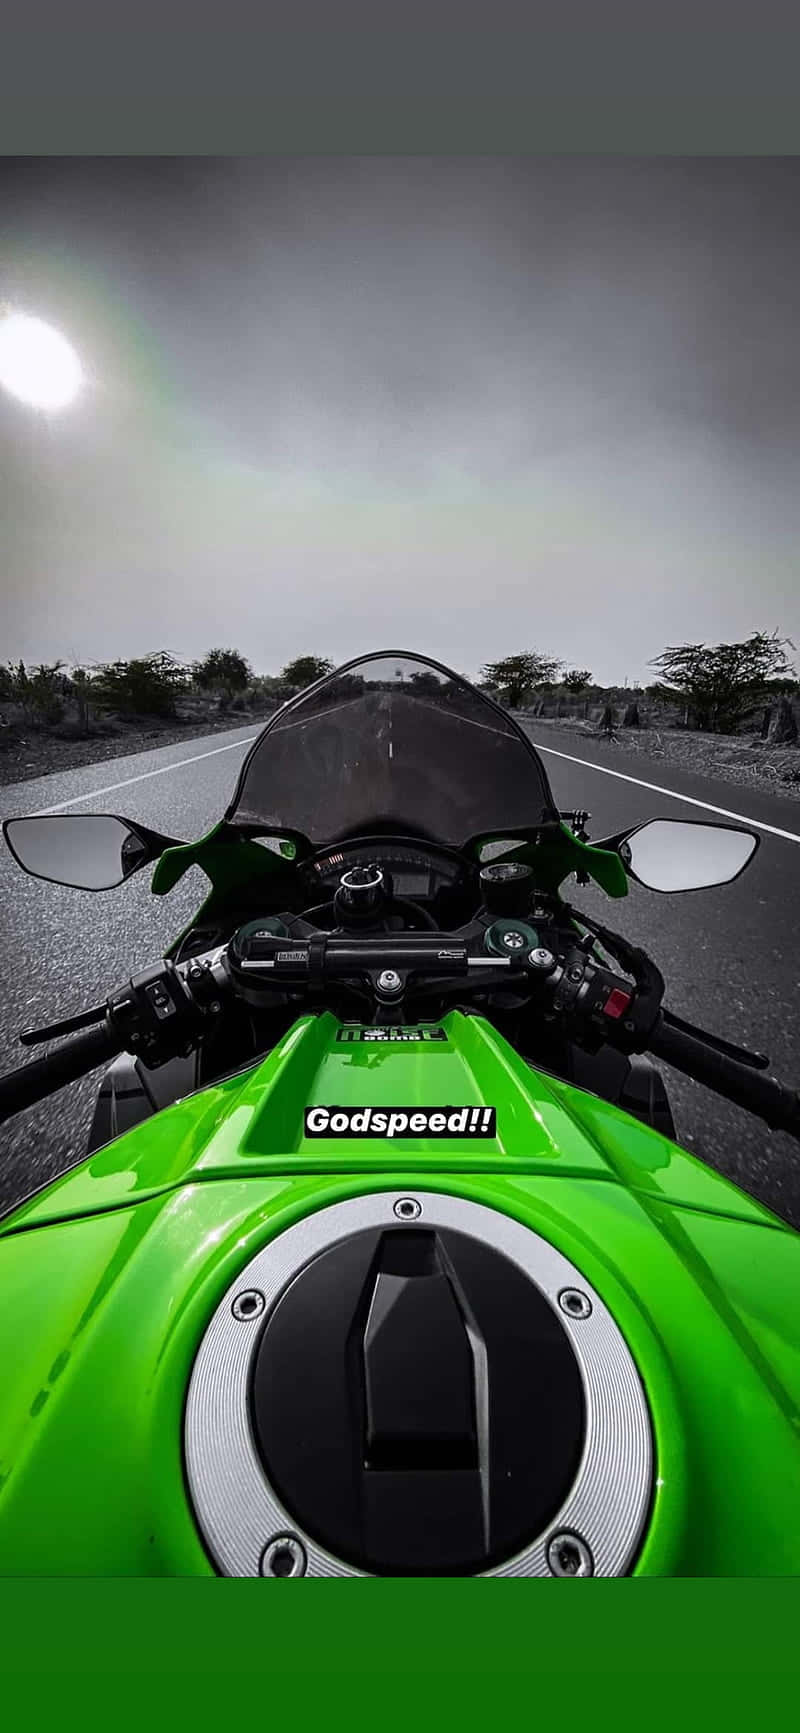 Maßgefertigteskawasaki Motorrad-desktop-hintergrundbild Wallpaper